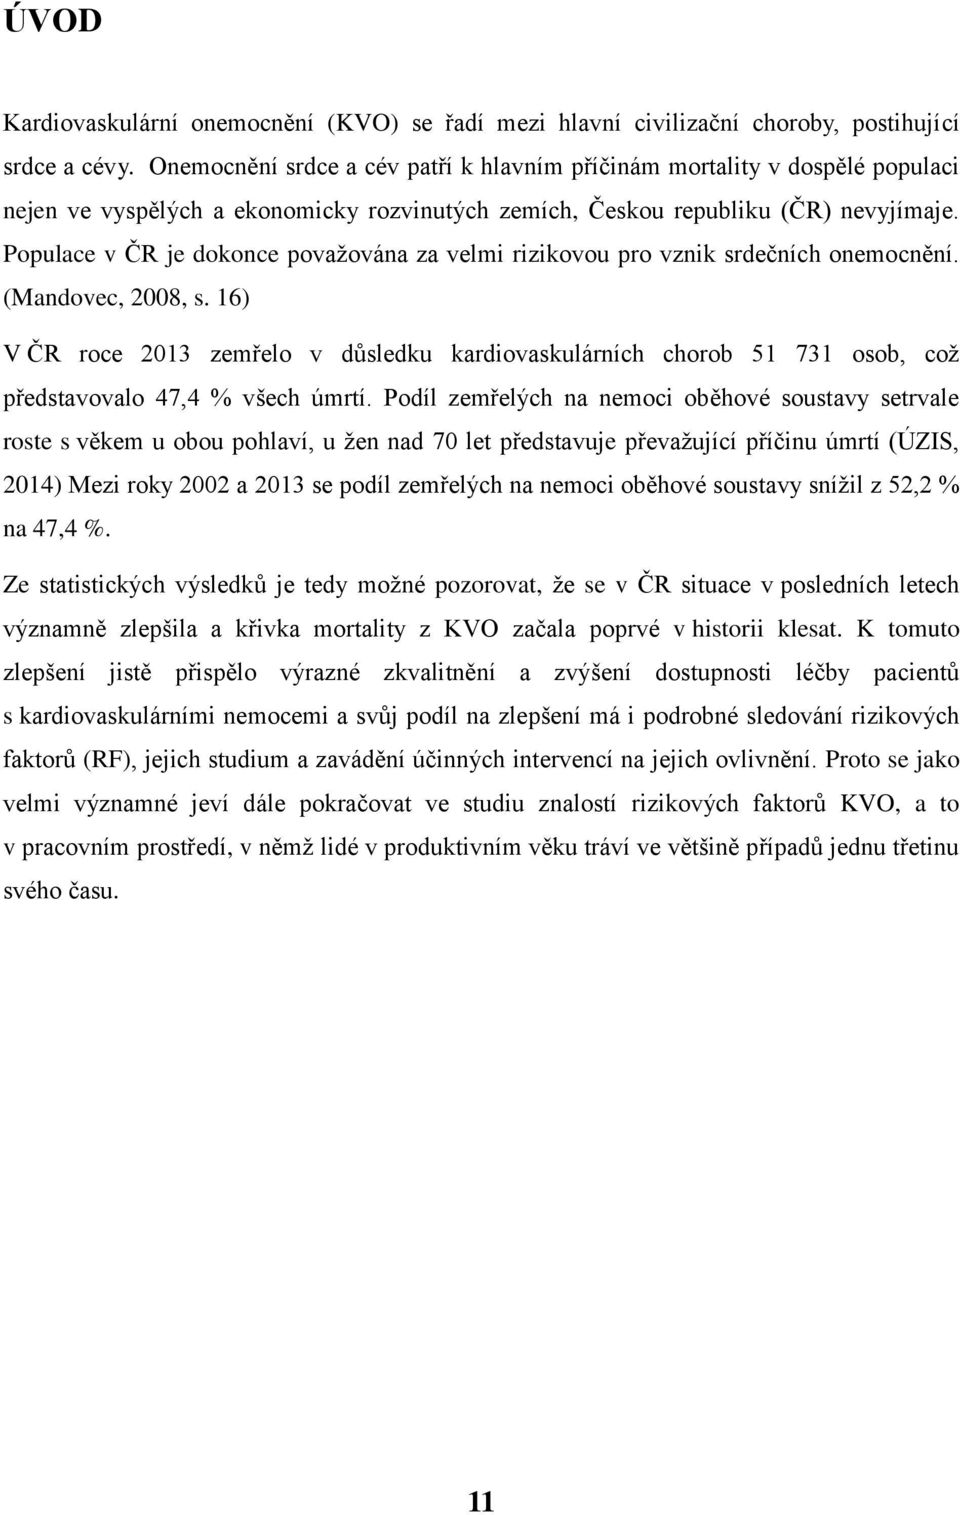 Populace v ČR je dokonce považována za velmi rizikovou pro vznik srdečních onemocnění. (Mandovec, 2008, s.